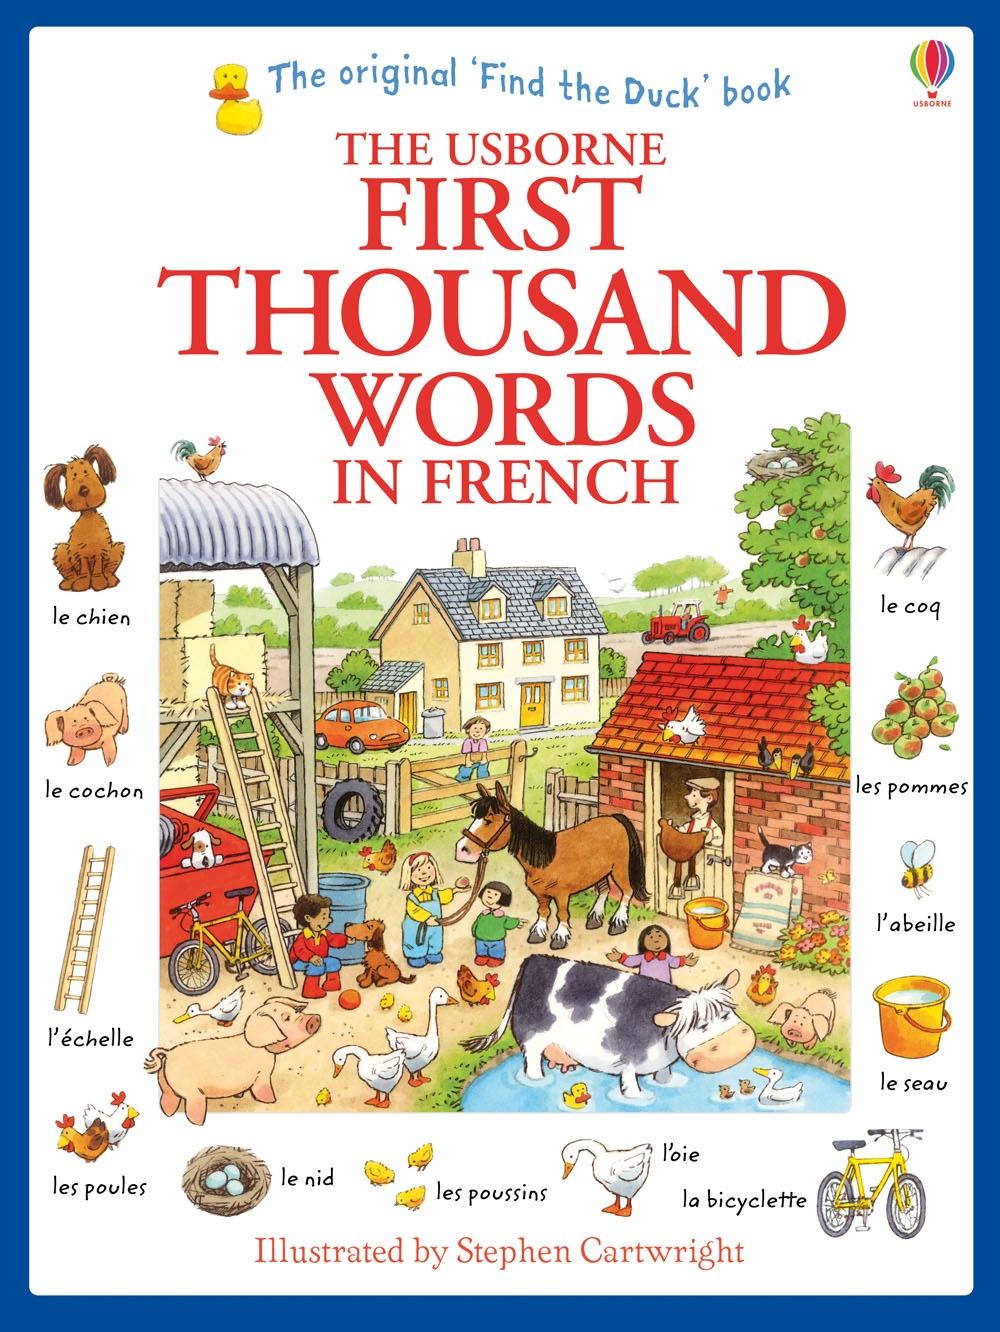 First Thousand Words in French / Heather Amery / Taschenbuch / Kartoniert / Broschiert / Englisch / 2013 / Usborne Publishing / EAN 9781409566113 - Amery, Heather